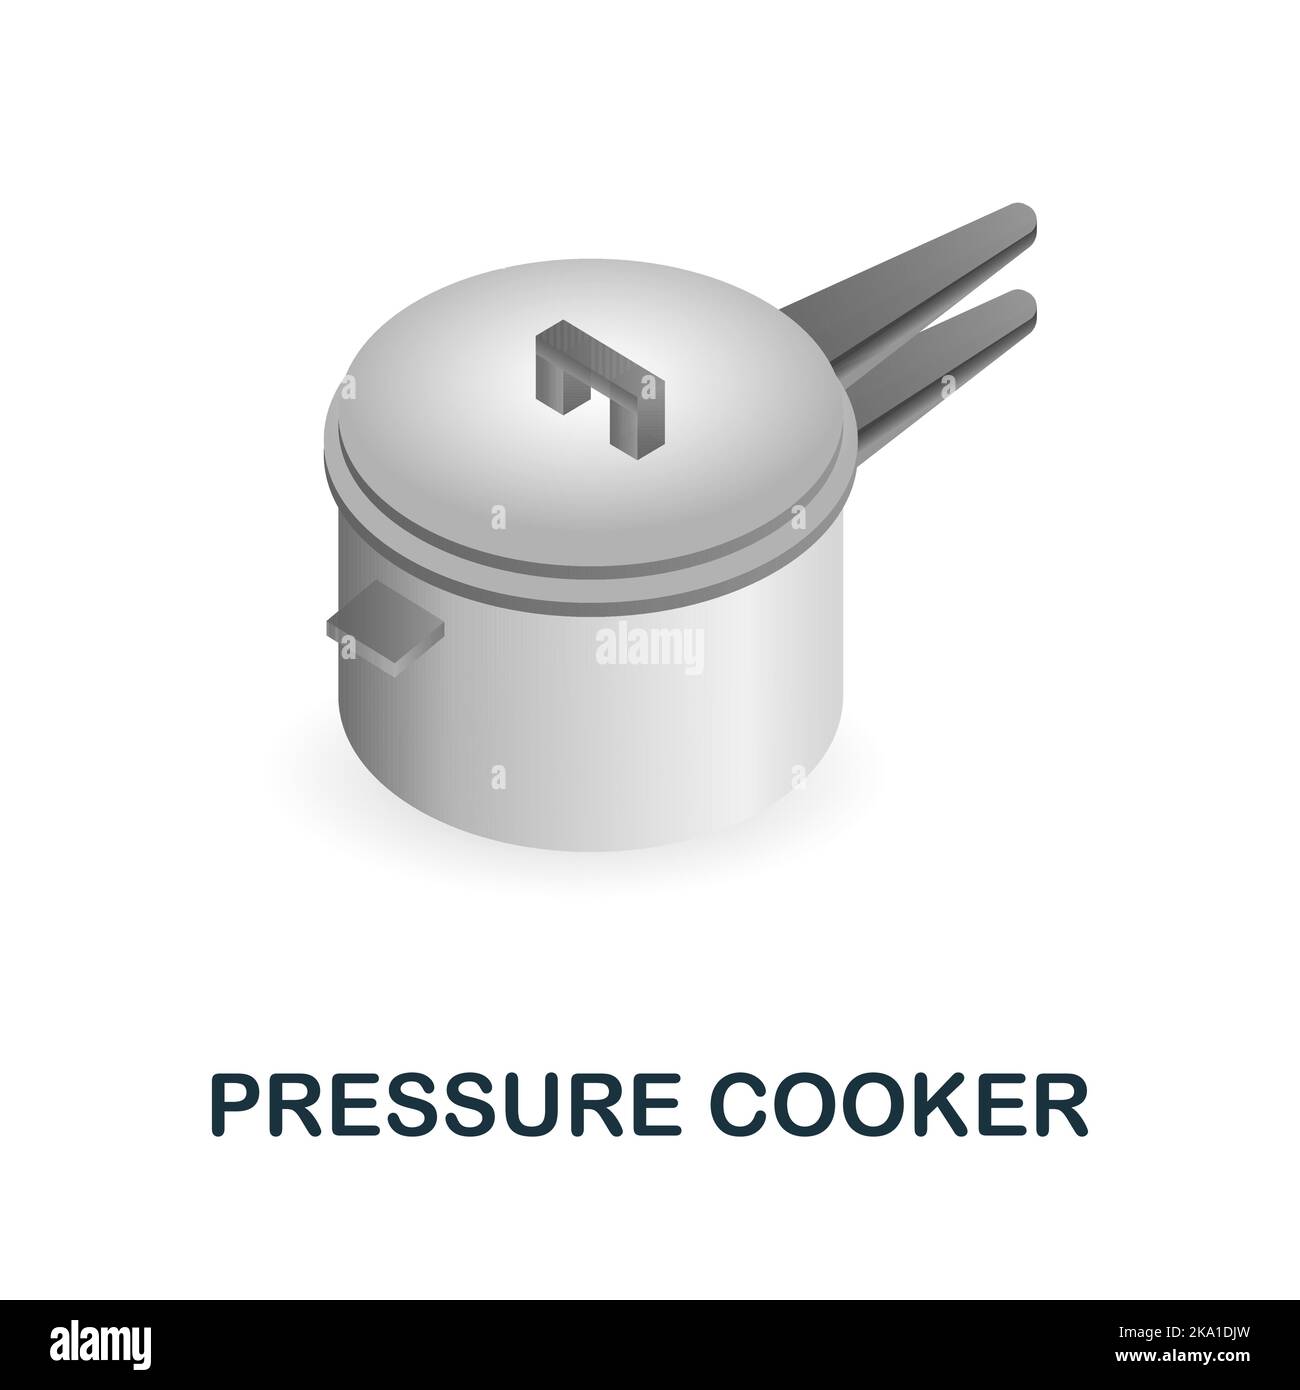 Icône du cuiseur de pression. 3d illustration de la collection de fournitures de cuisine. Icône Creative Pressure Cooker 3D pour la conception Web, les modèles, les infographies et Illustration de Vecteur